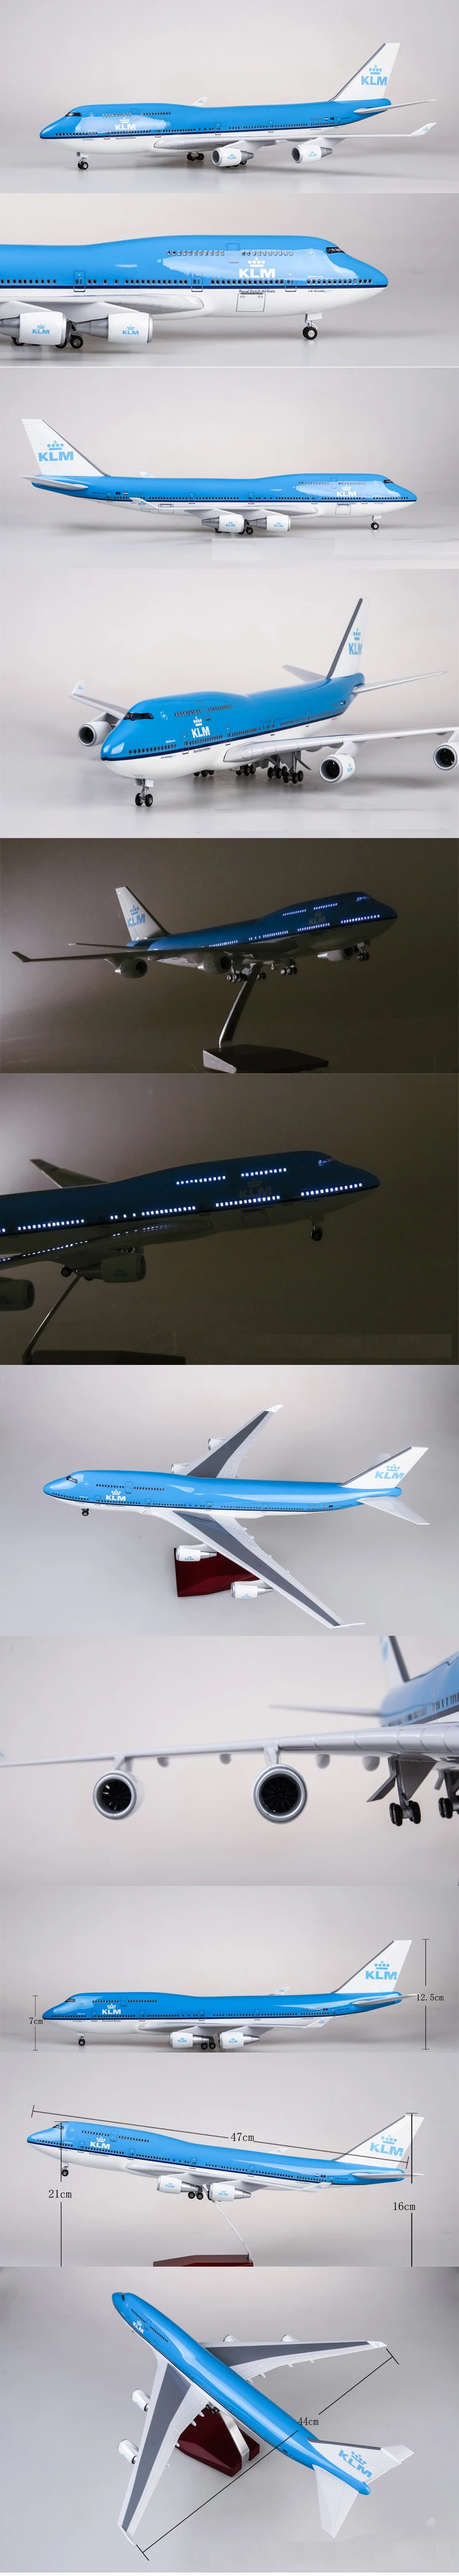 1/157 масштаб 47 см модель самолета Смола Boeing B747 KLM королевские голландские авиалинии модель самолета с светильник на колесах Airbus для коллекции